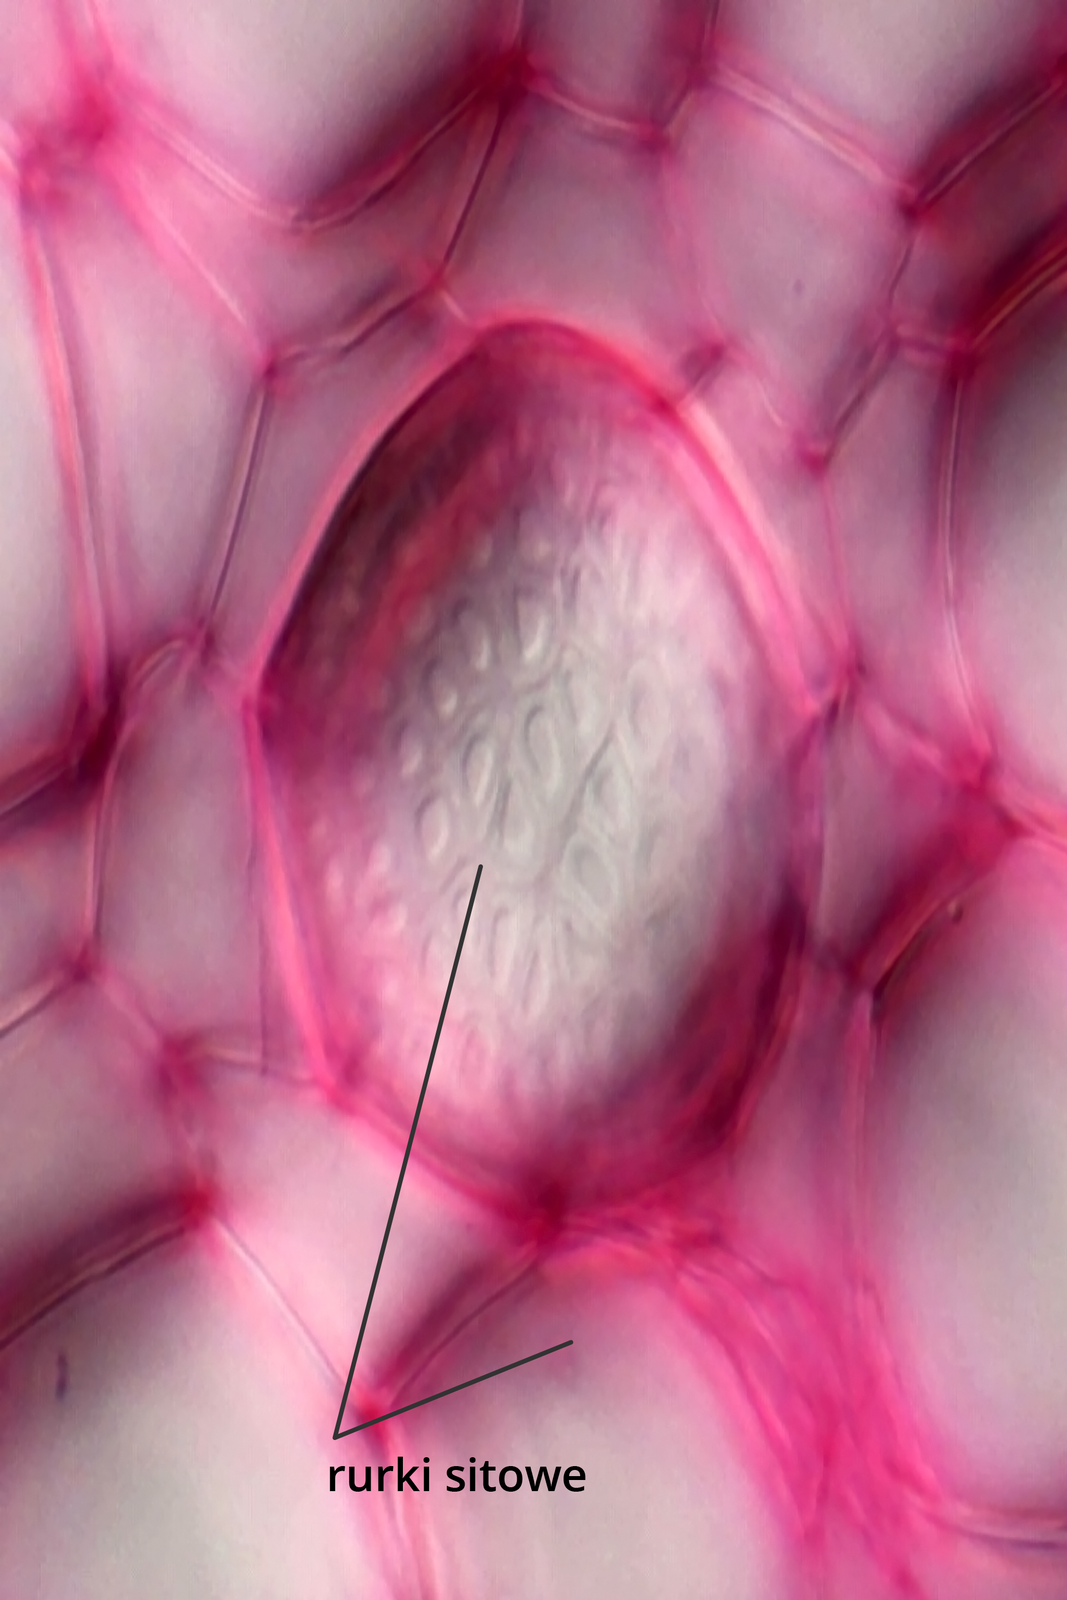 Fotografia mikroskopowa przedstawia sito łyko w dużym zbliżeniu. Komórki są wybarwione na różowo i podpisane: komórki sitowe.